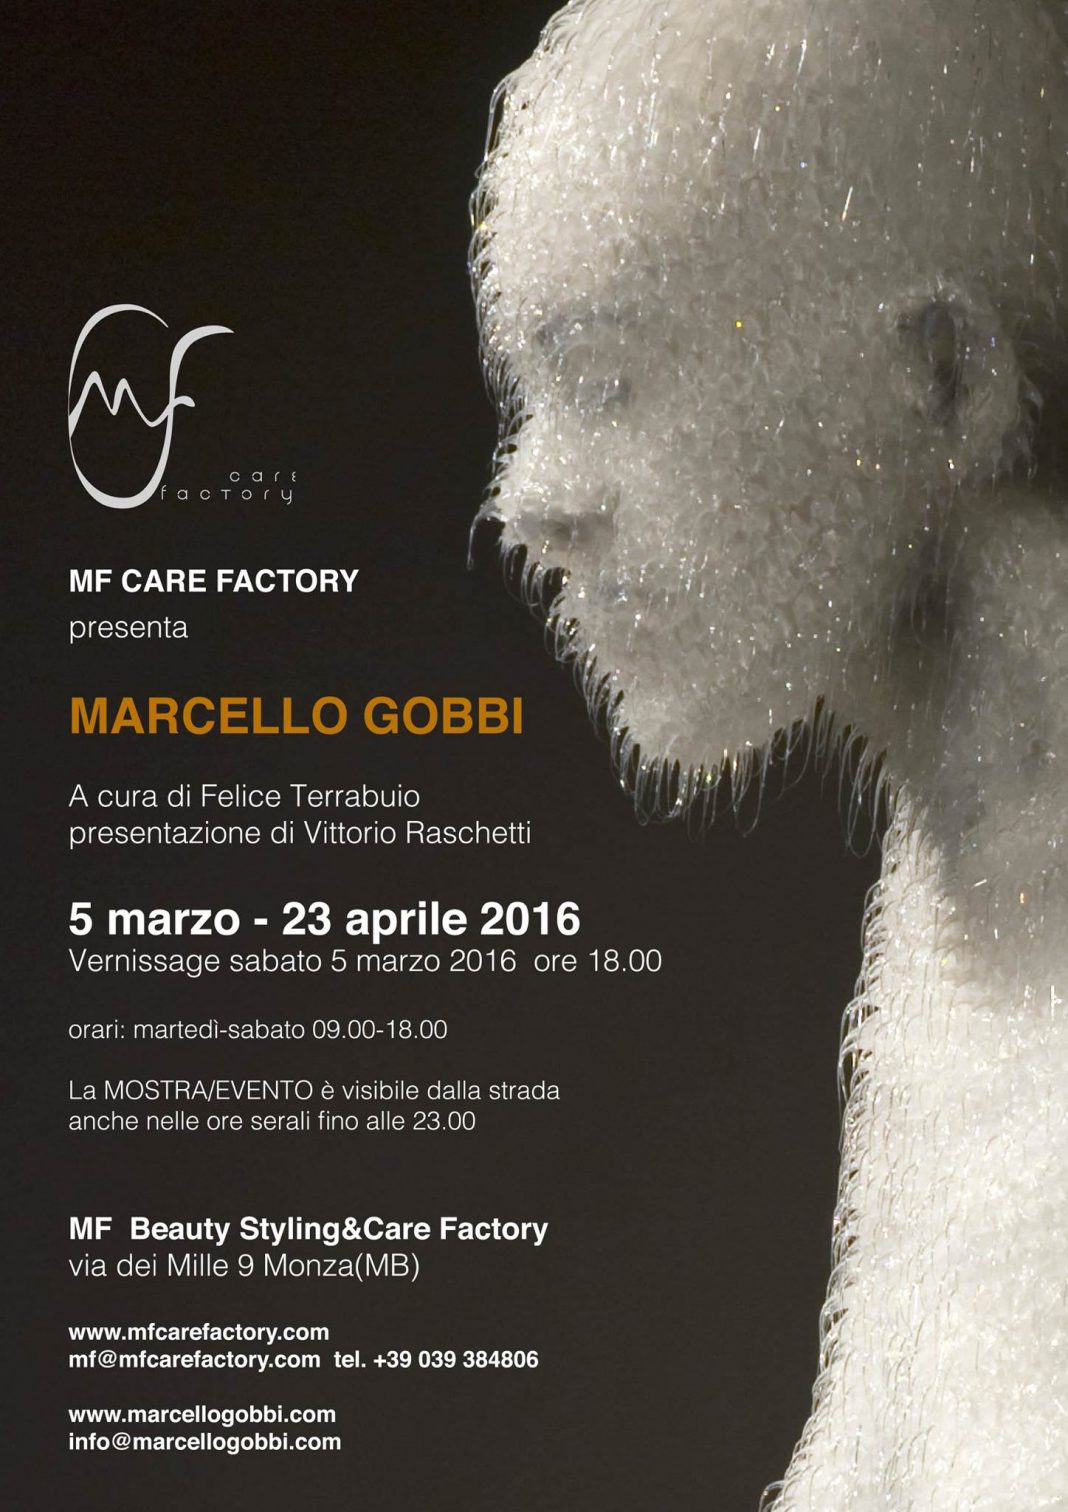 Marcello Gobbihttps://www.exibart.com/repository/media/eventi/2016/03/marcello-gobbi-1068x1512.jpg